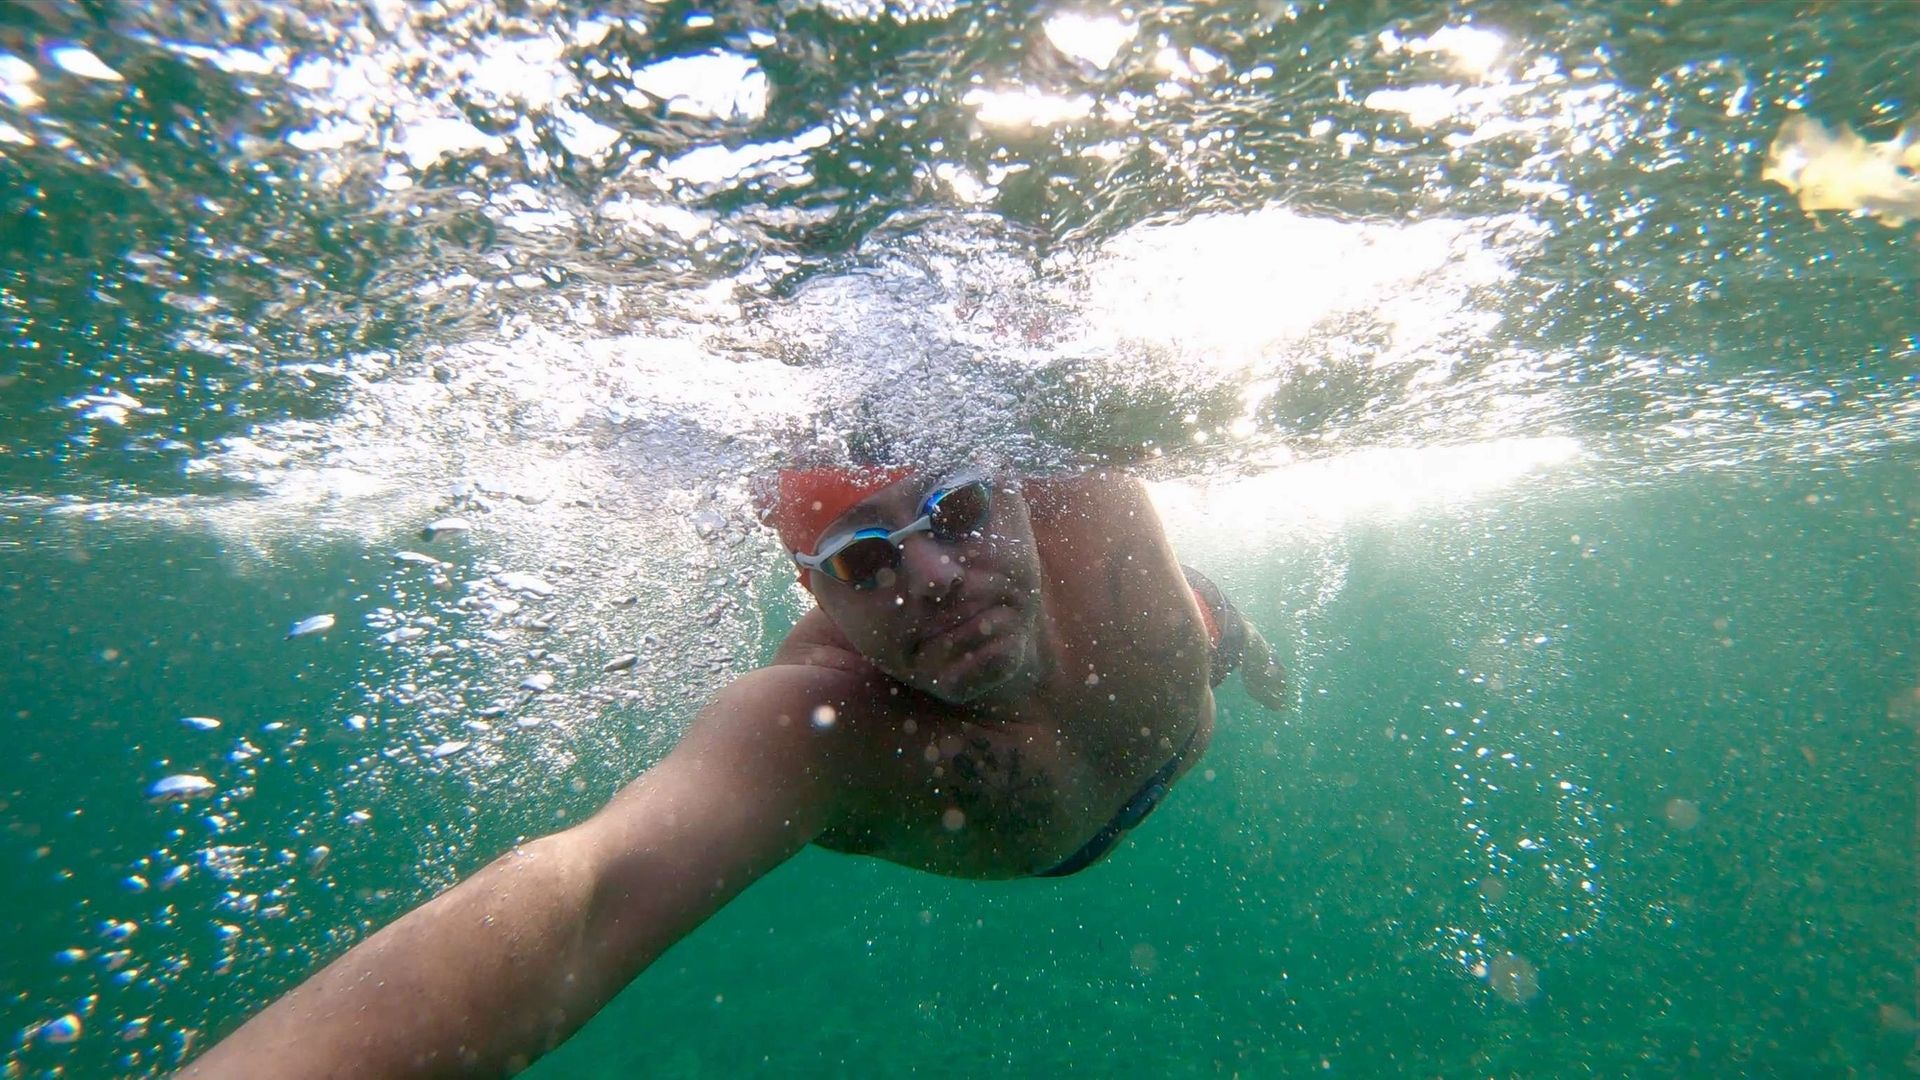 Luke Richards swimming in the ocean